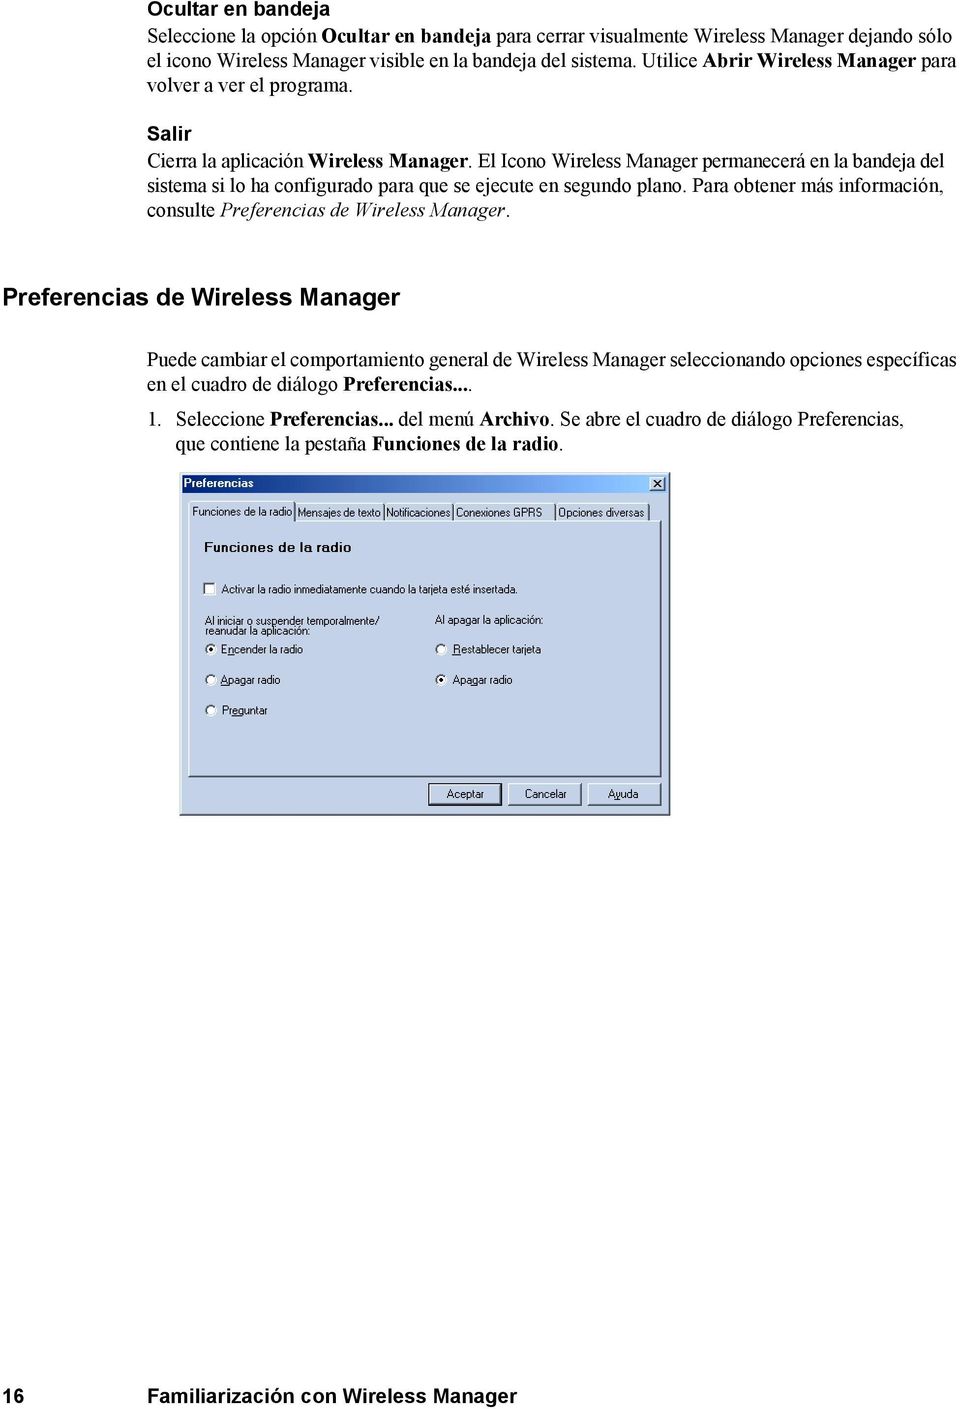 El Icono Wireless Manager permanecerá en la bandeja del sistema si lo ha configurado para que se ejecute en segundo plano. Para obtener más información, consulte Preferencias de Wireless Manager.